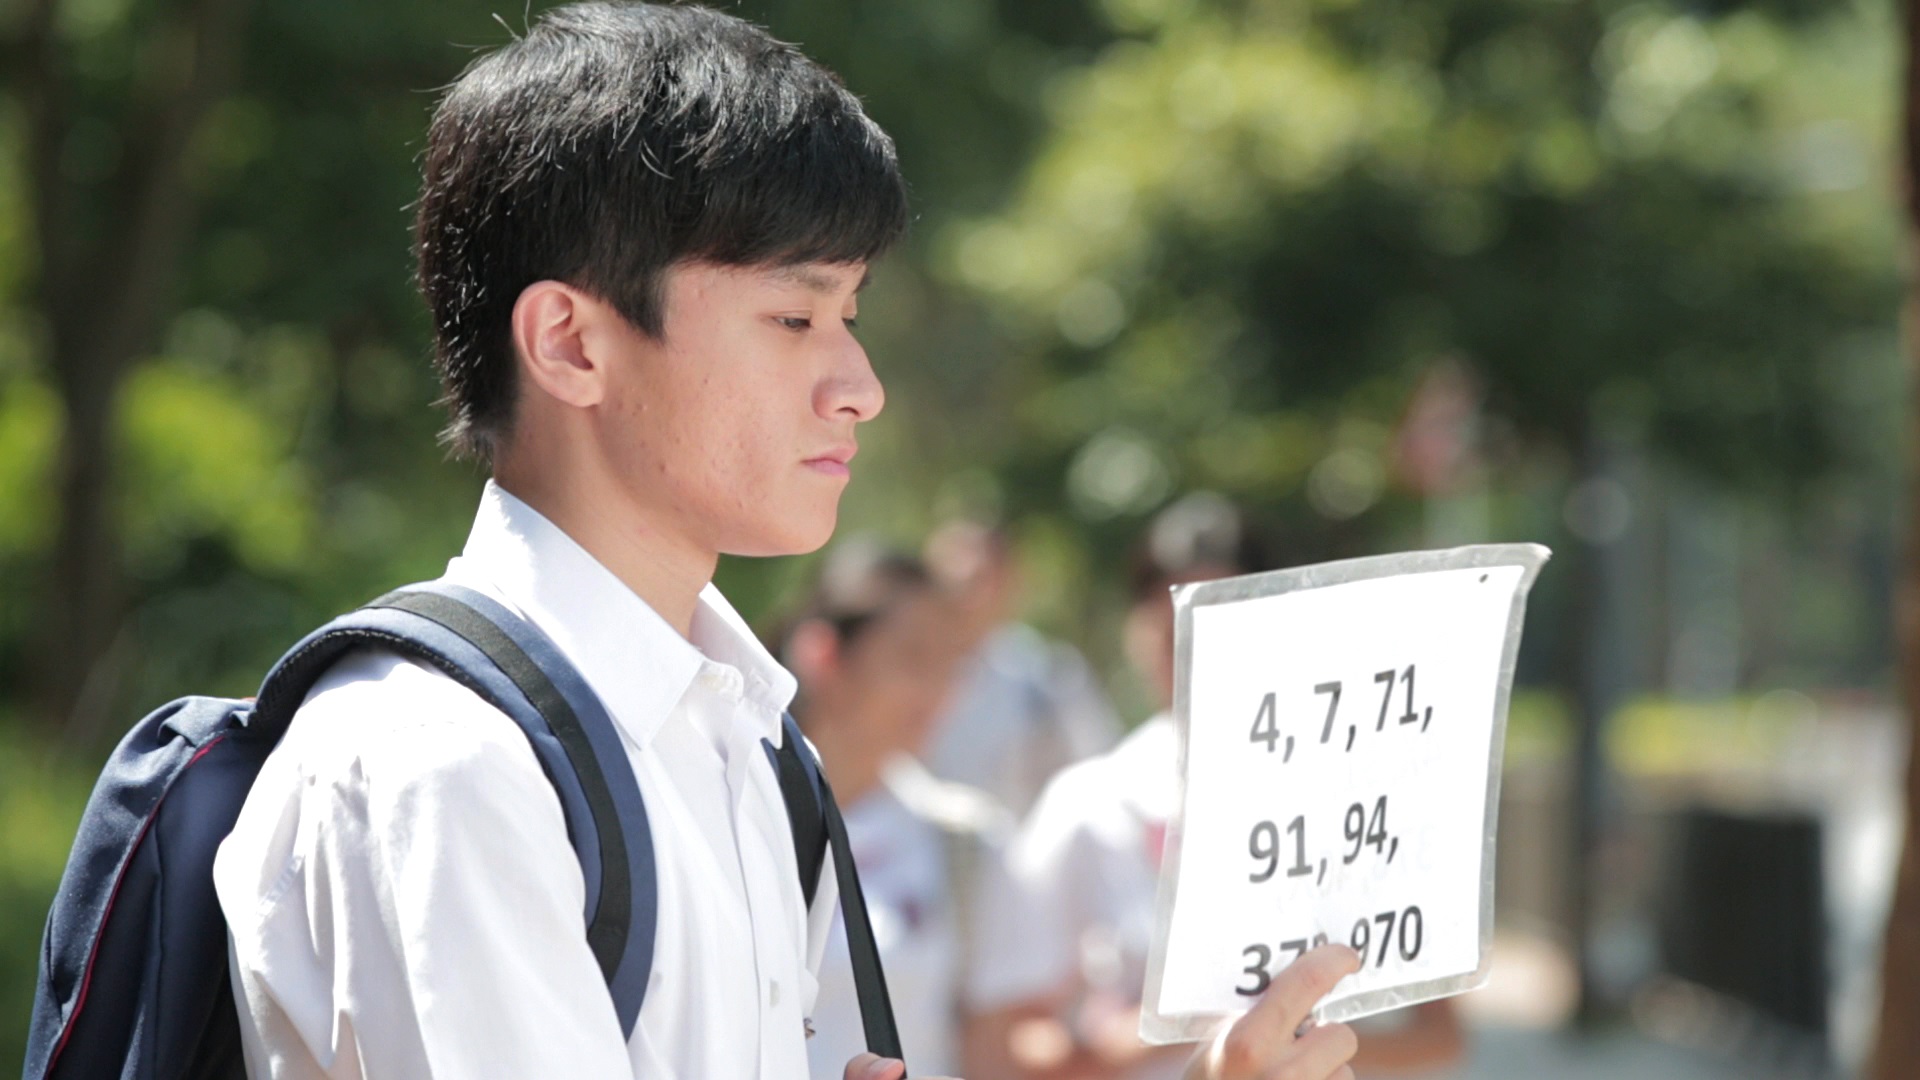 视障演员练子诺饰演视障学童阿Ken，剧中可见视障人士等巴士时必须自备路线号码牌。